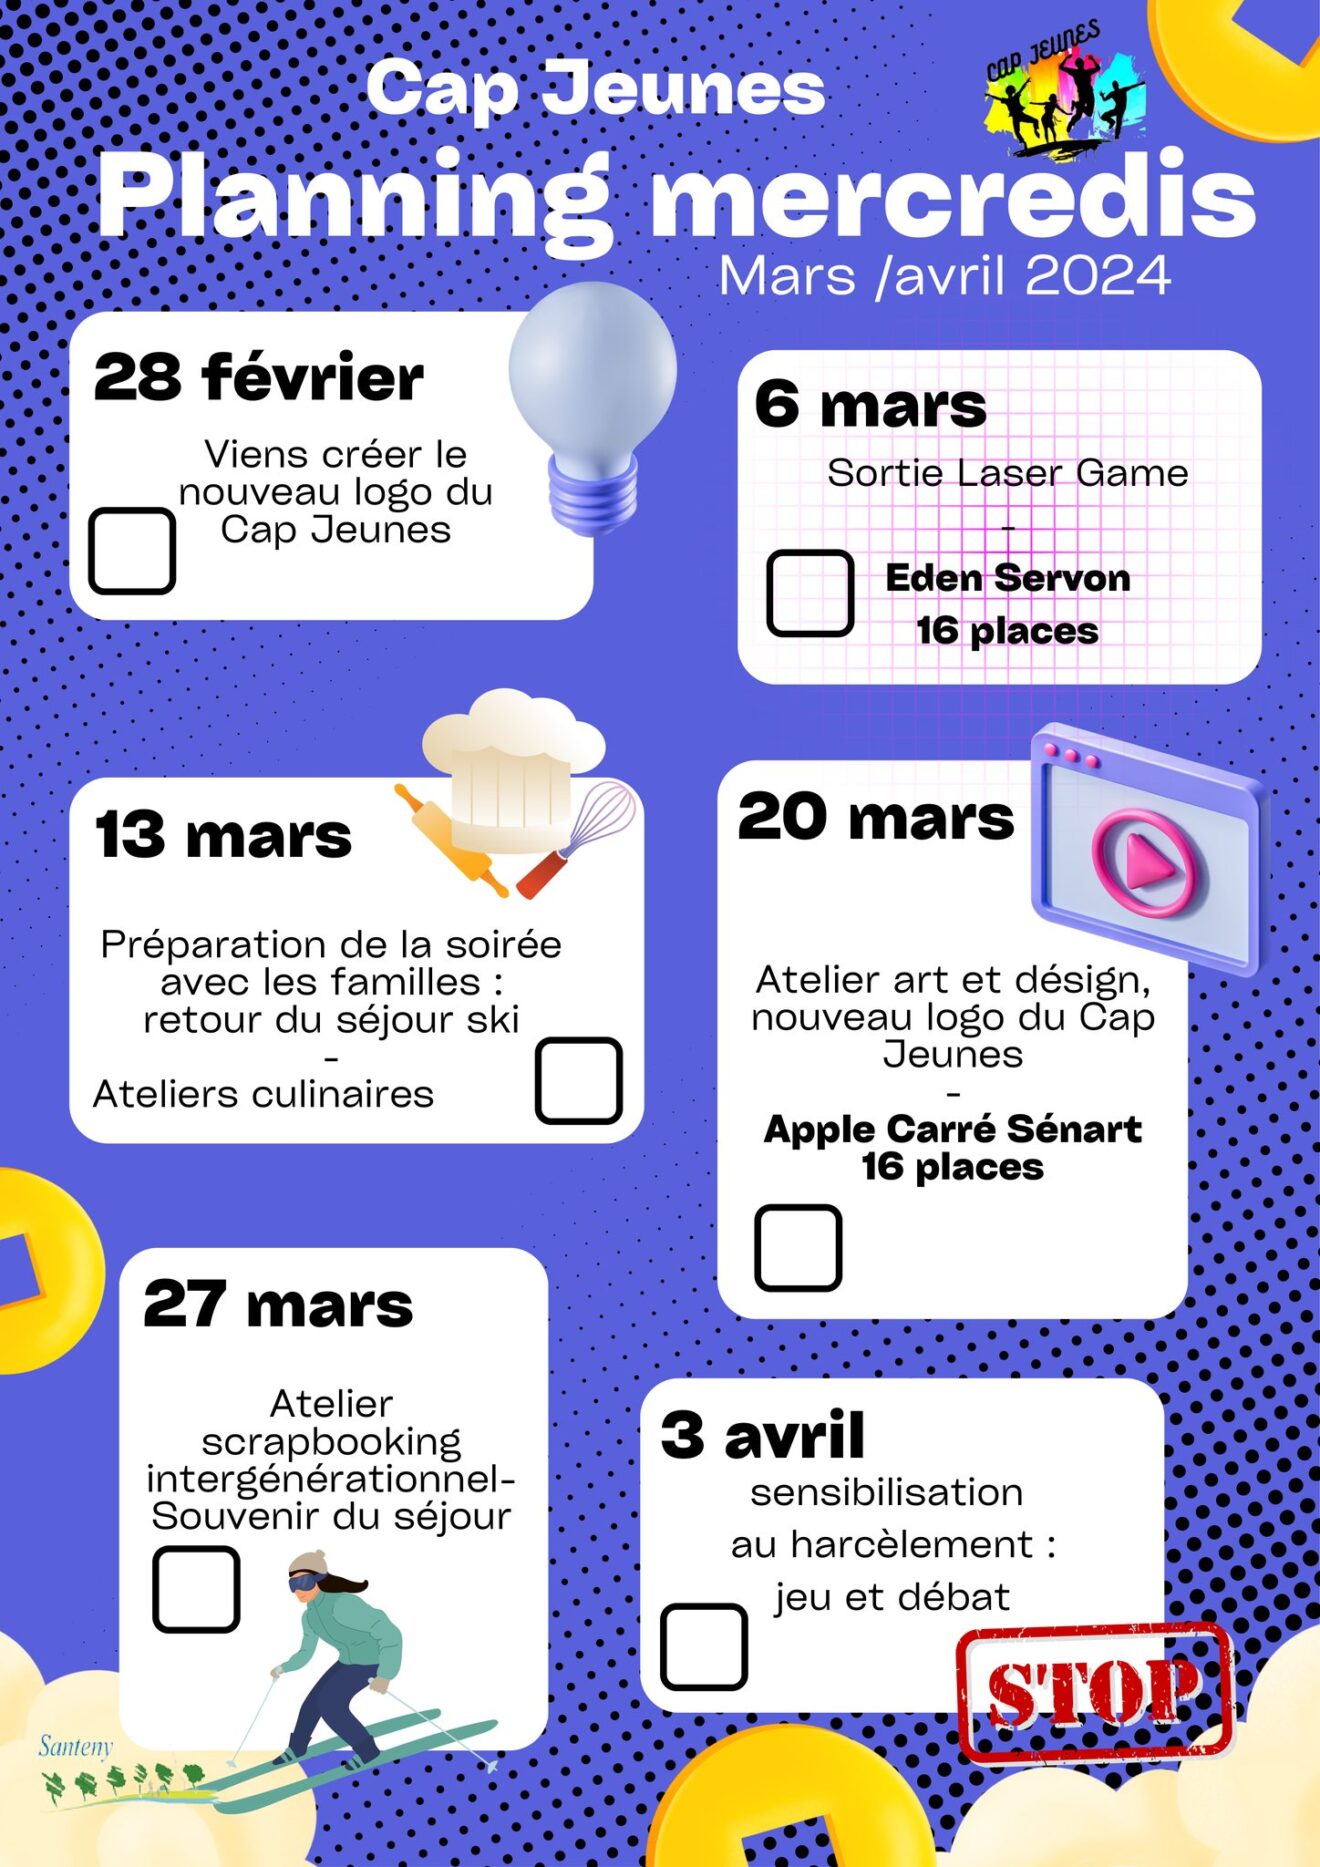 Cap Jeunes : découvrez le planning des mercredis de mars et avril 2024 !